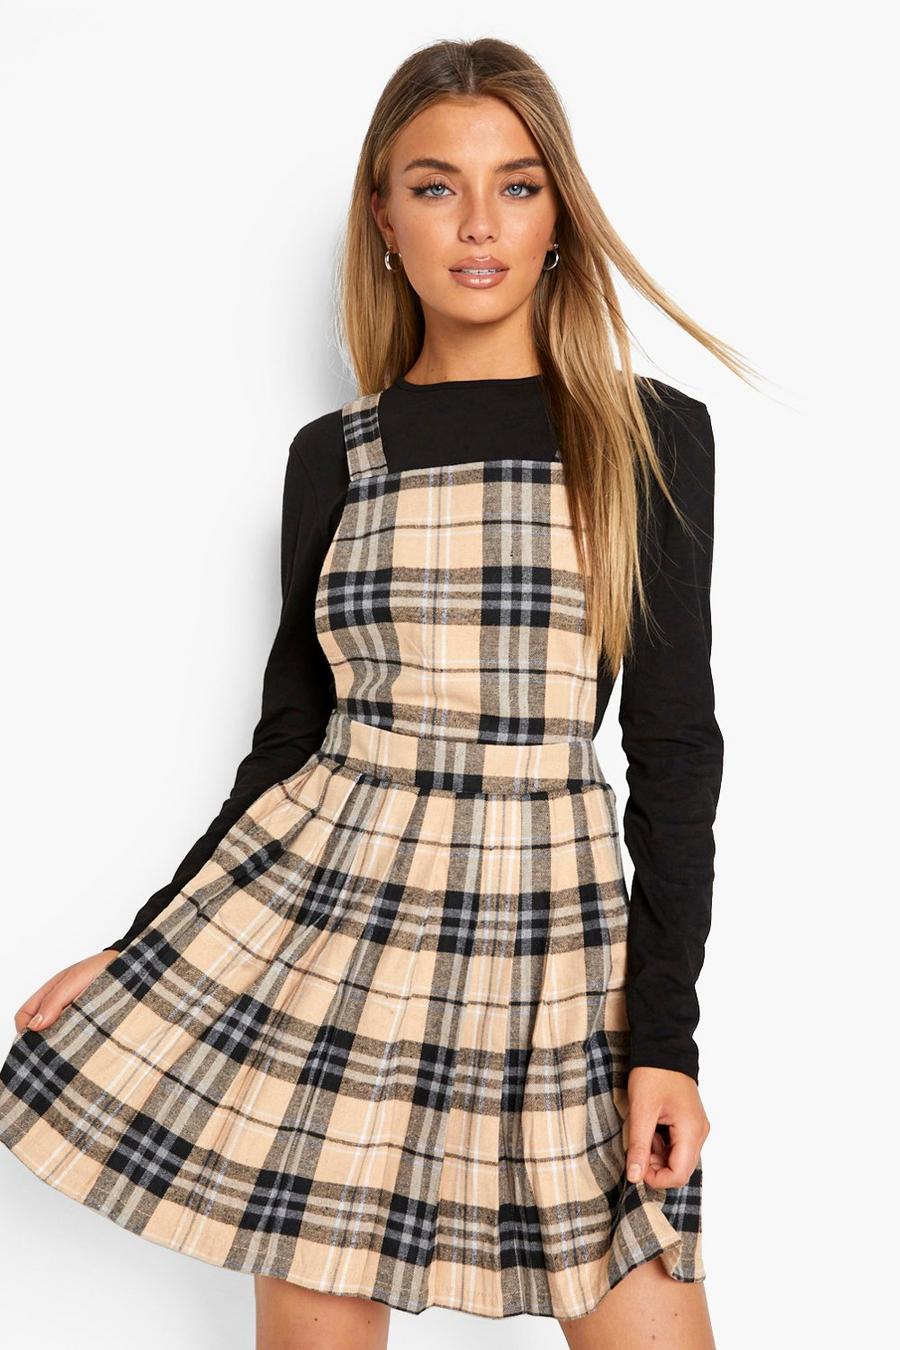 Tan brown Flannel Print Pleated Skirt Jumper Dress